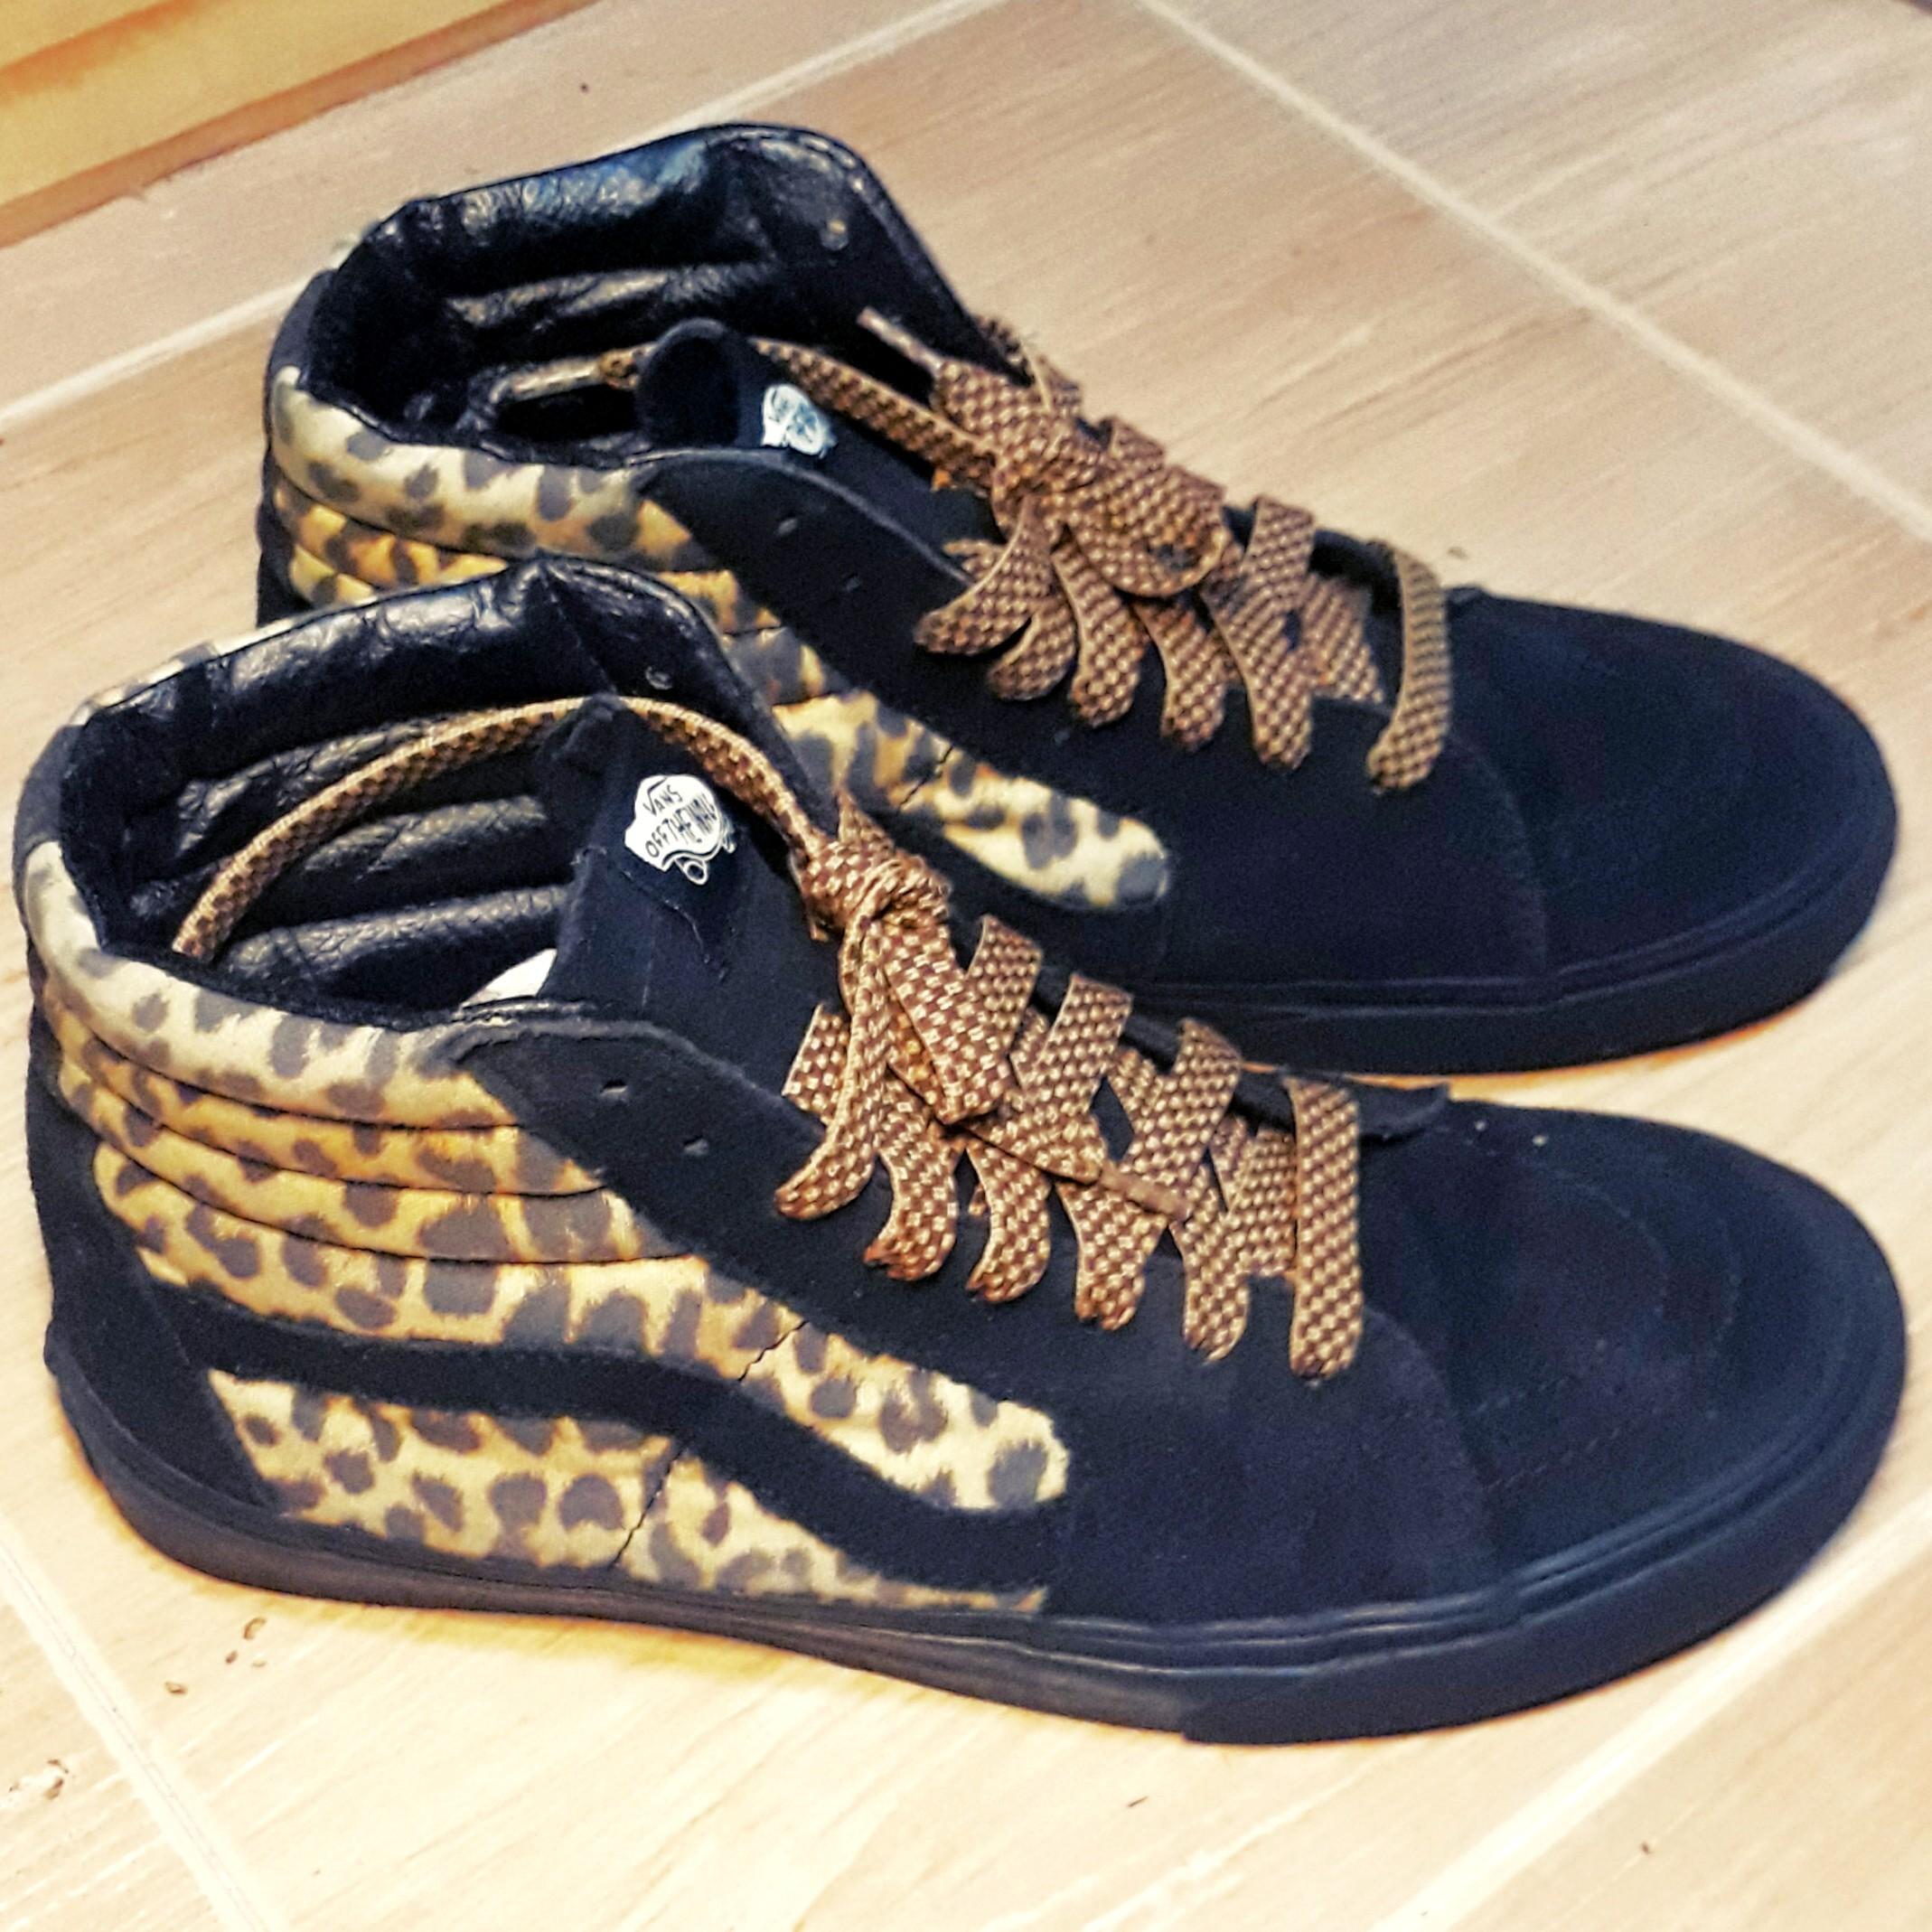 Vans sk8 hi leopard print shoes, Men's 